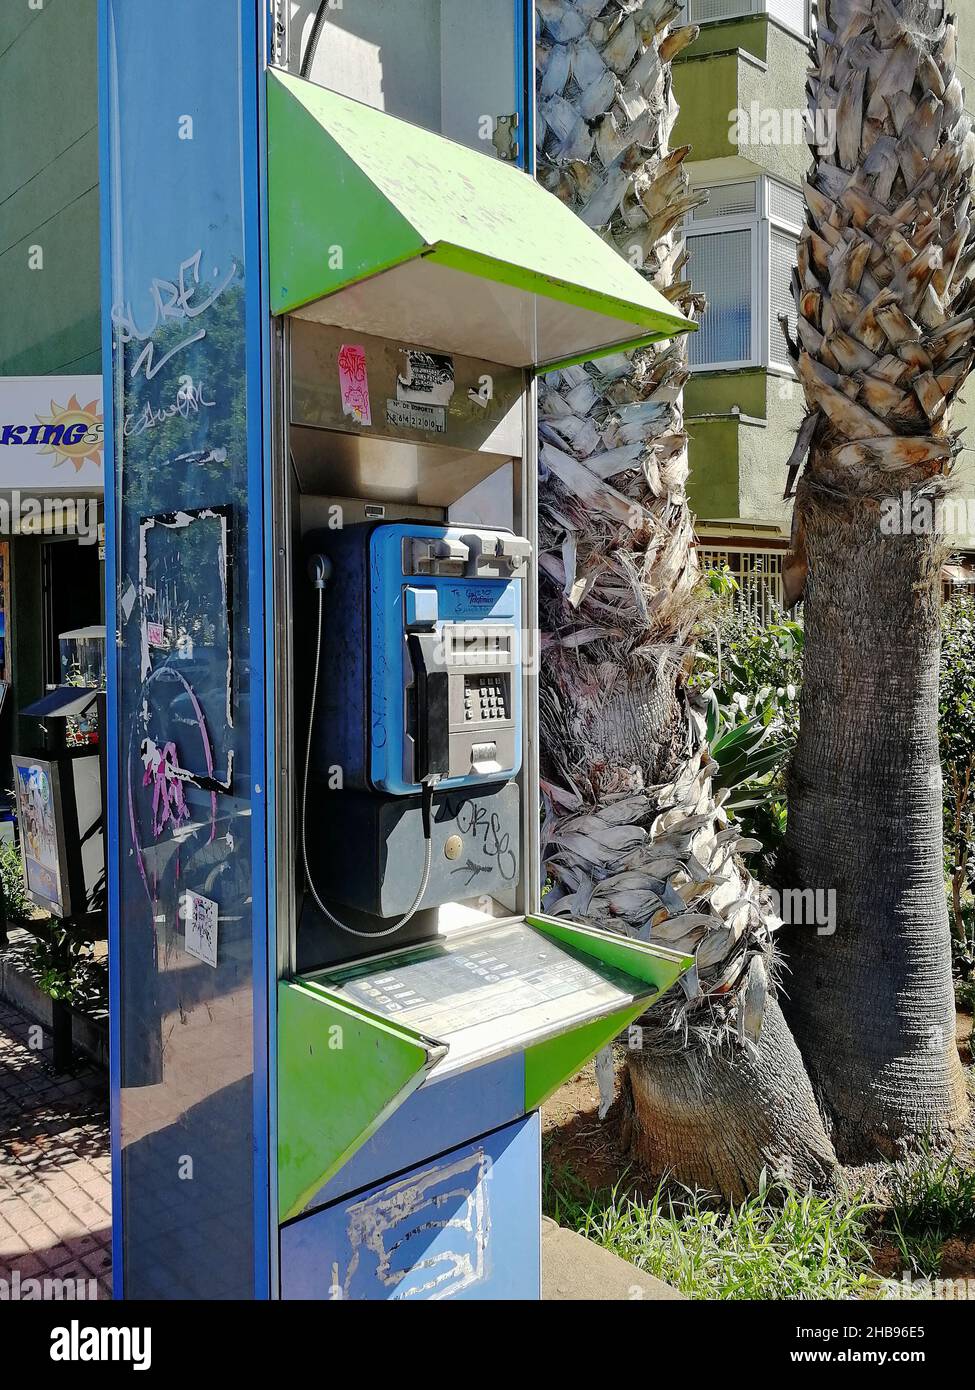 Il y a encore des kiosques téléphoniques à Puerto de la Cruz, comme celui-ci sur la rue Calle Maria del Rosario Sotomayor près de la gare routière principale. Banque D'Images